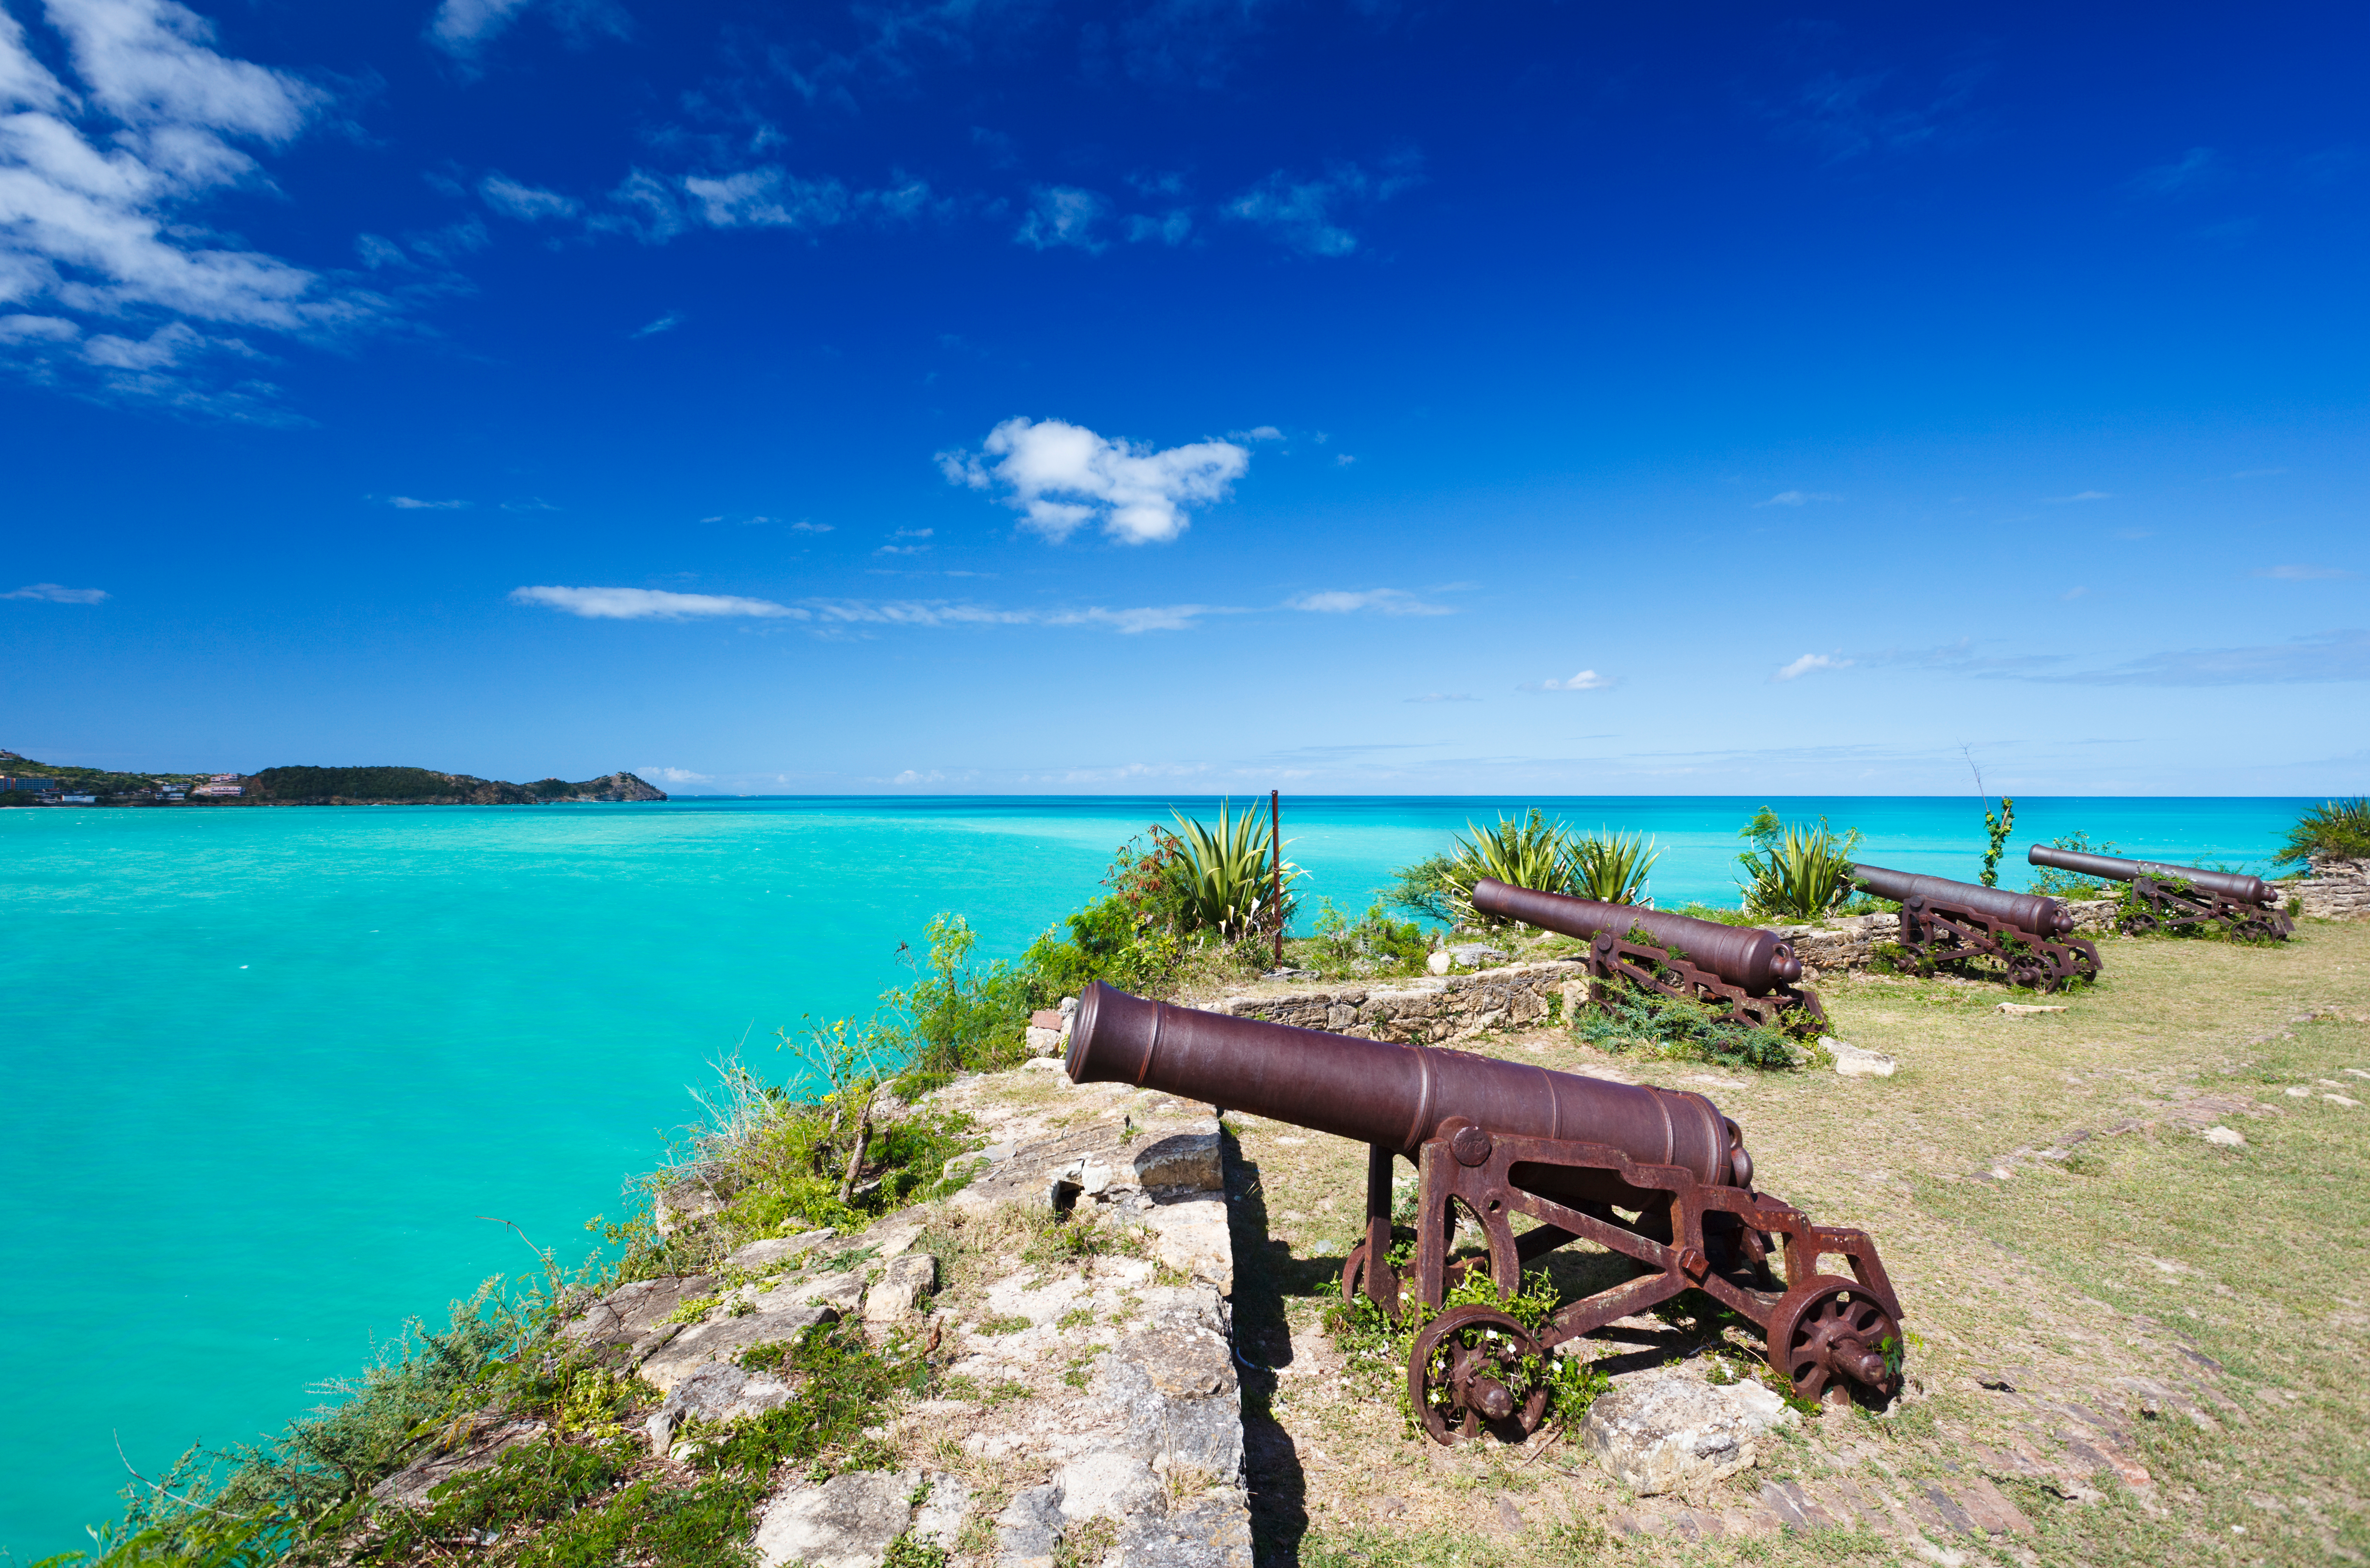 Le presentamos una de las mejores playas de Antigua y Barbuda, Fort James Beach.